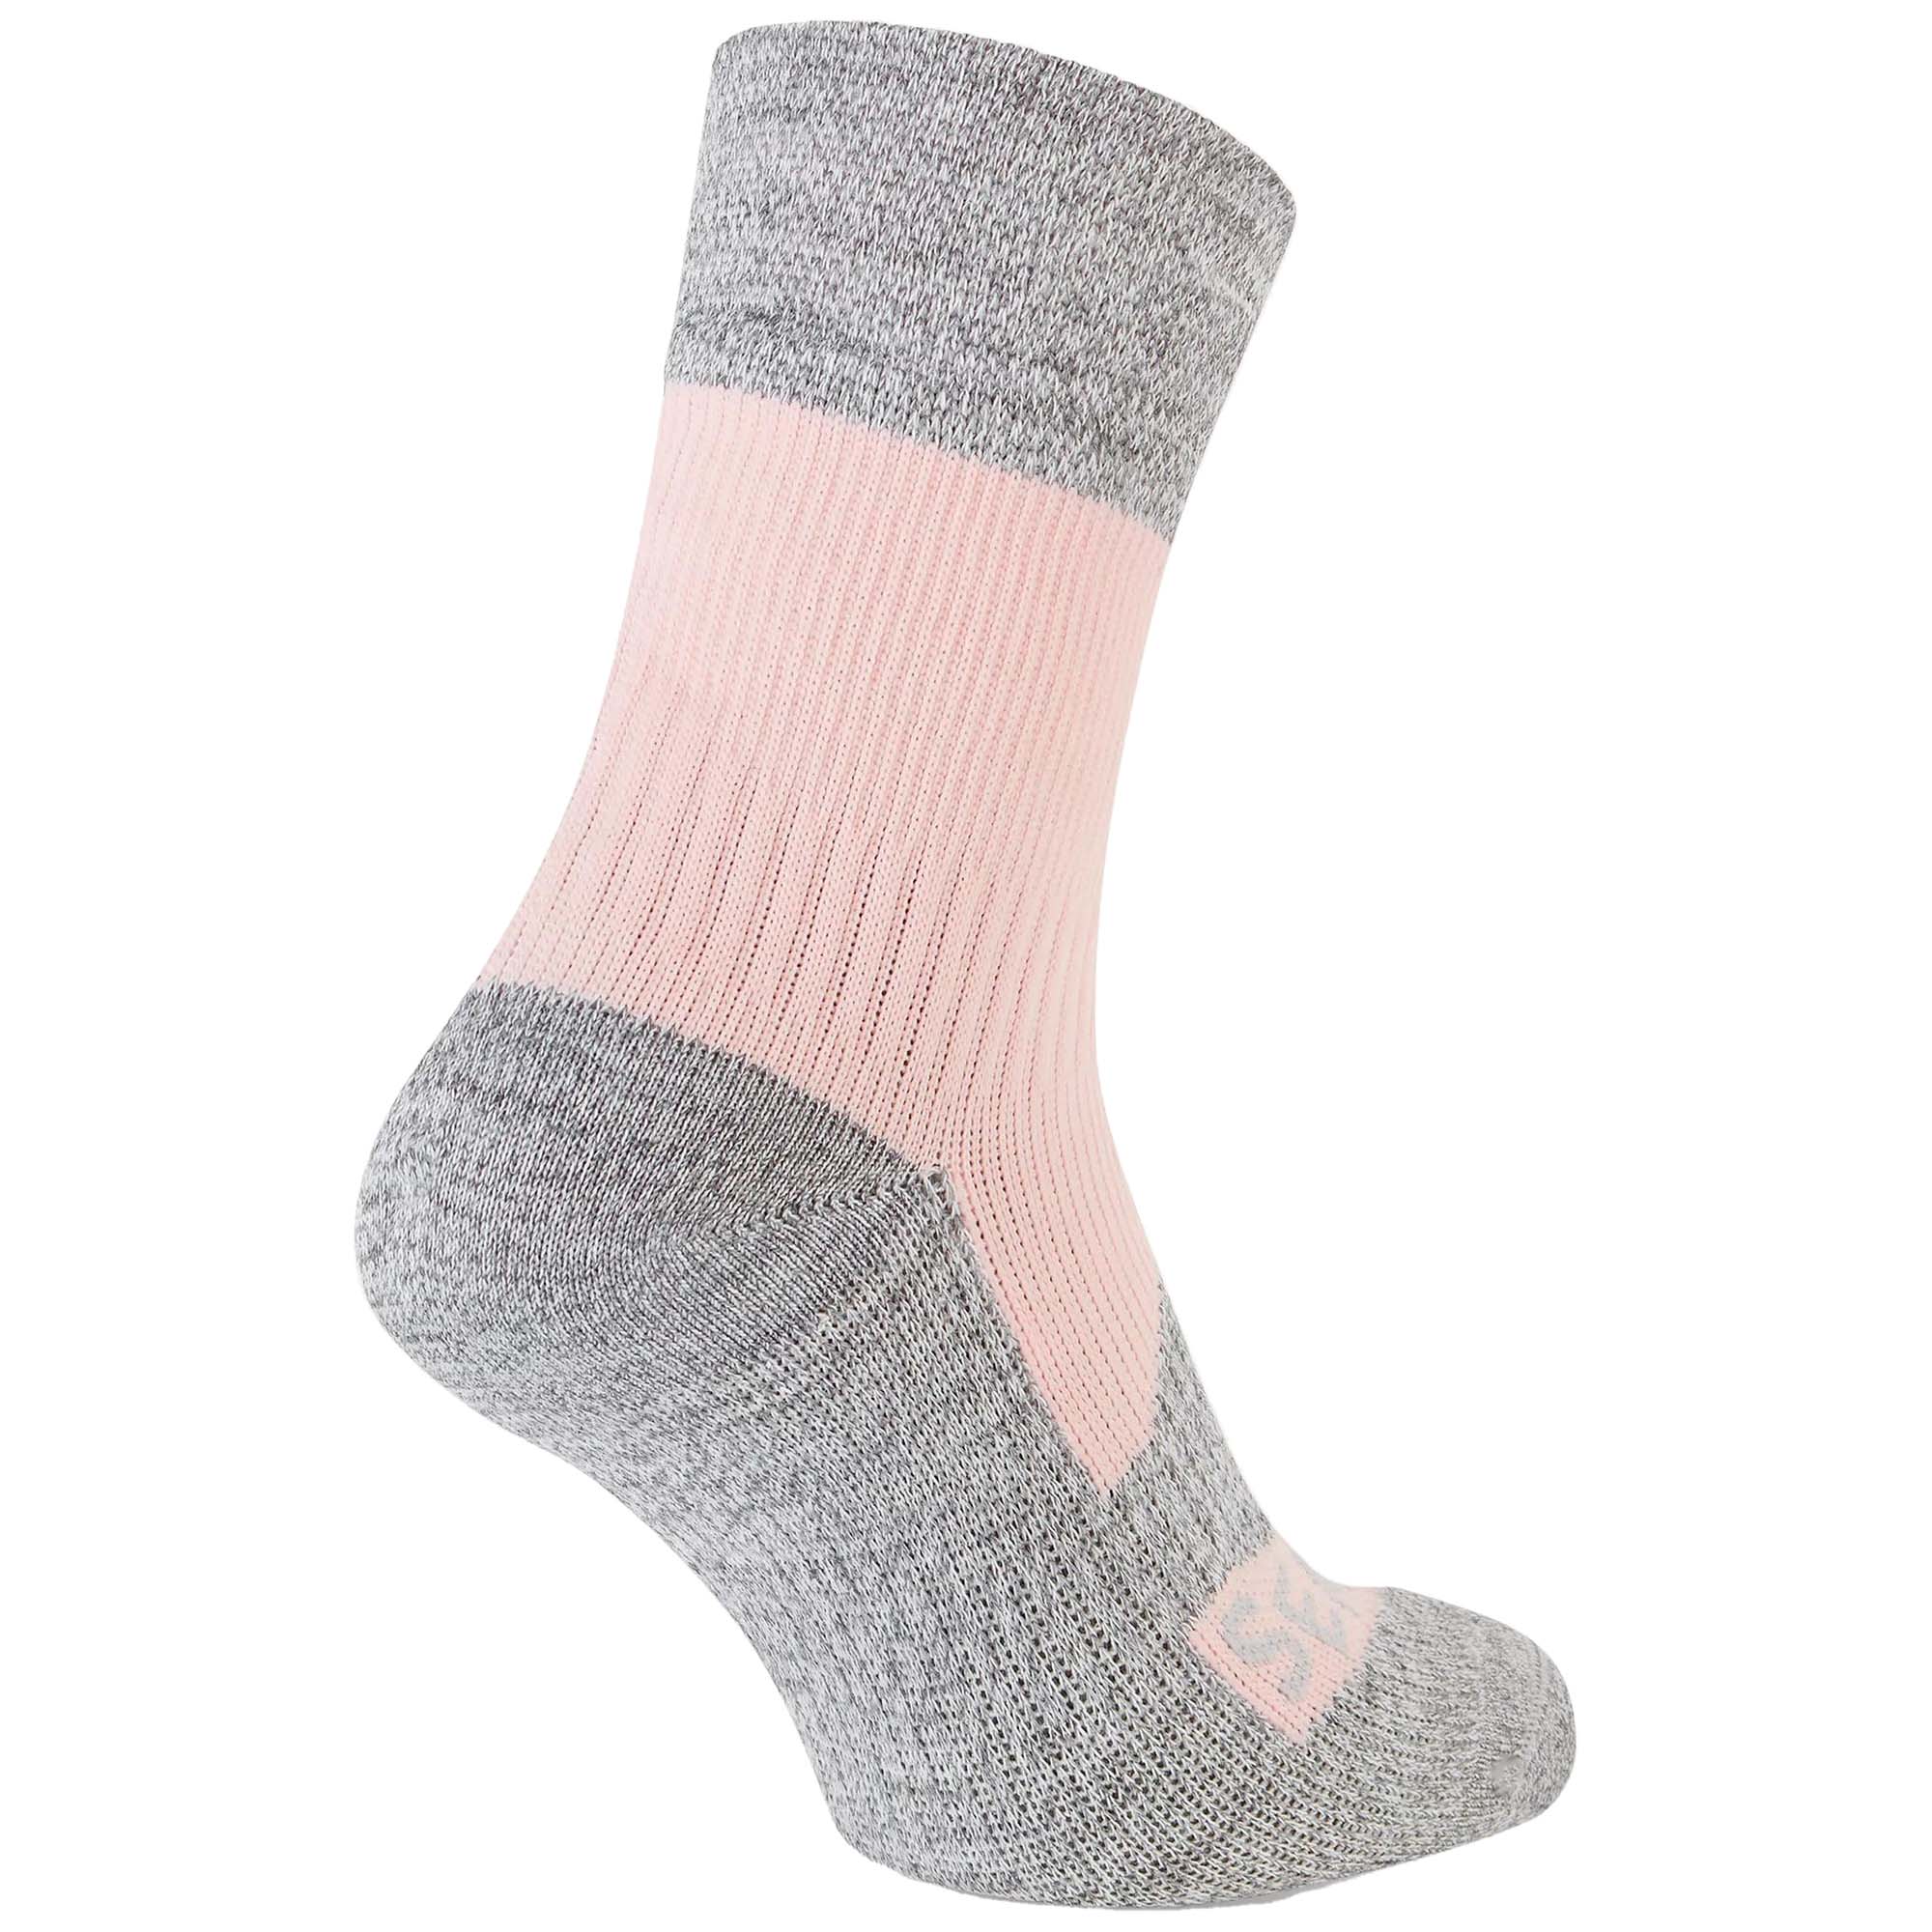 SealSkinz Bircham Waterproof Ankle Socks 